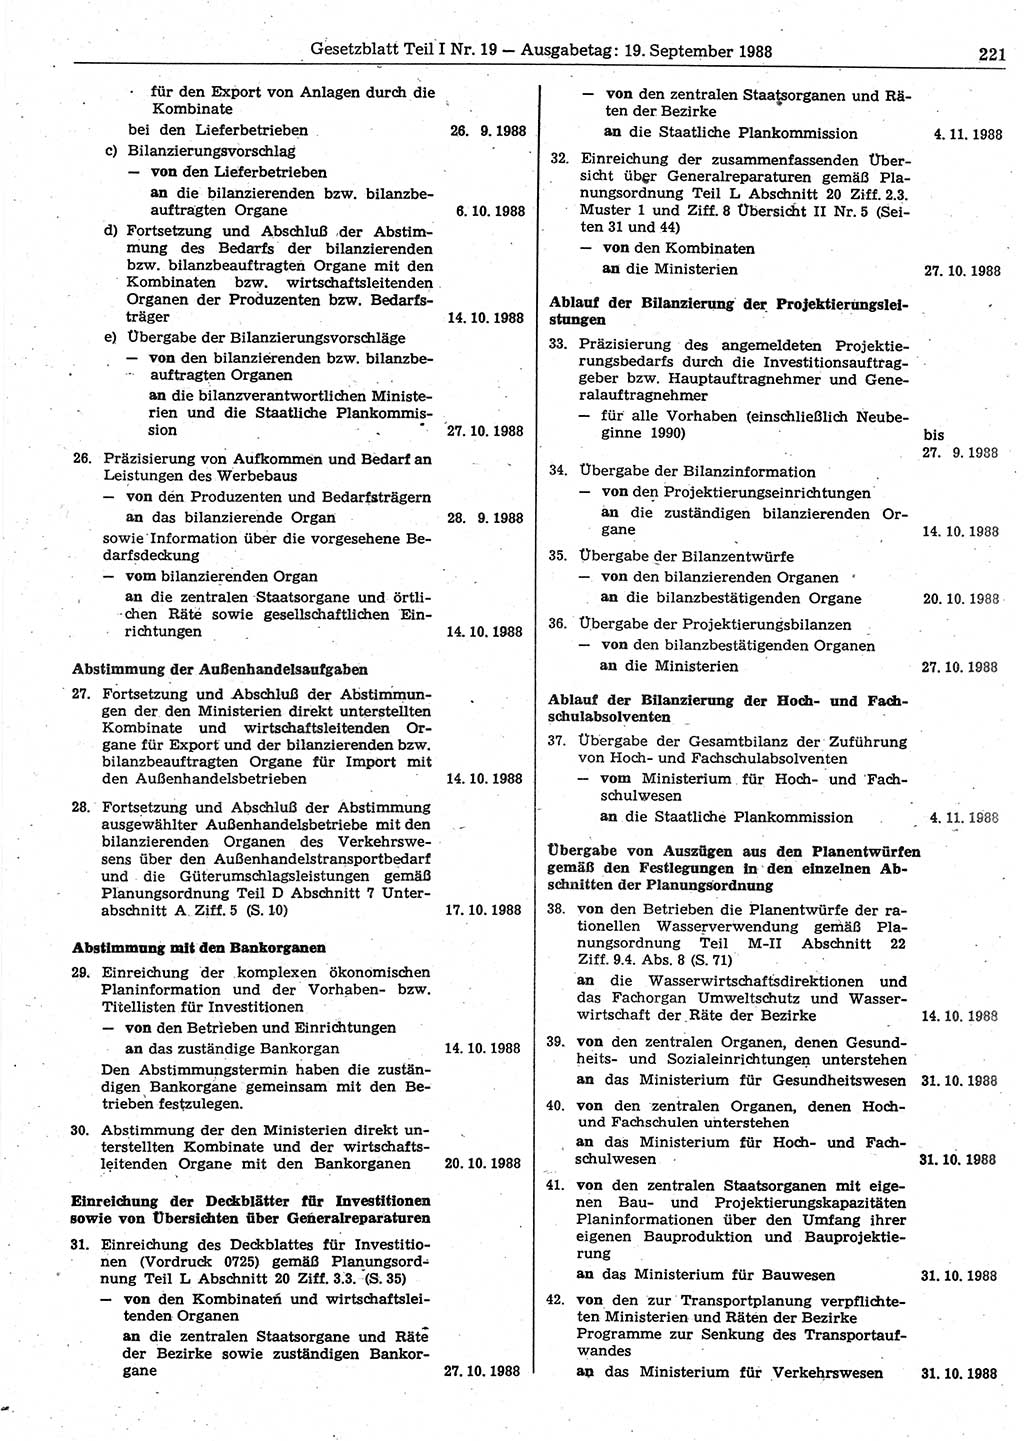 Gesetzblatt (GBl.) der Deutschen Demokratischen Republik (DDR) Teil Ⅰ 1988, Seite 221 (GBl. DDR Ⅰ 1988, S. 221)